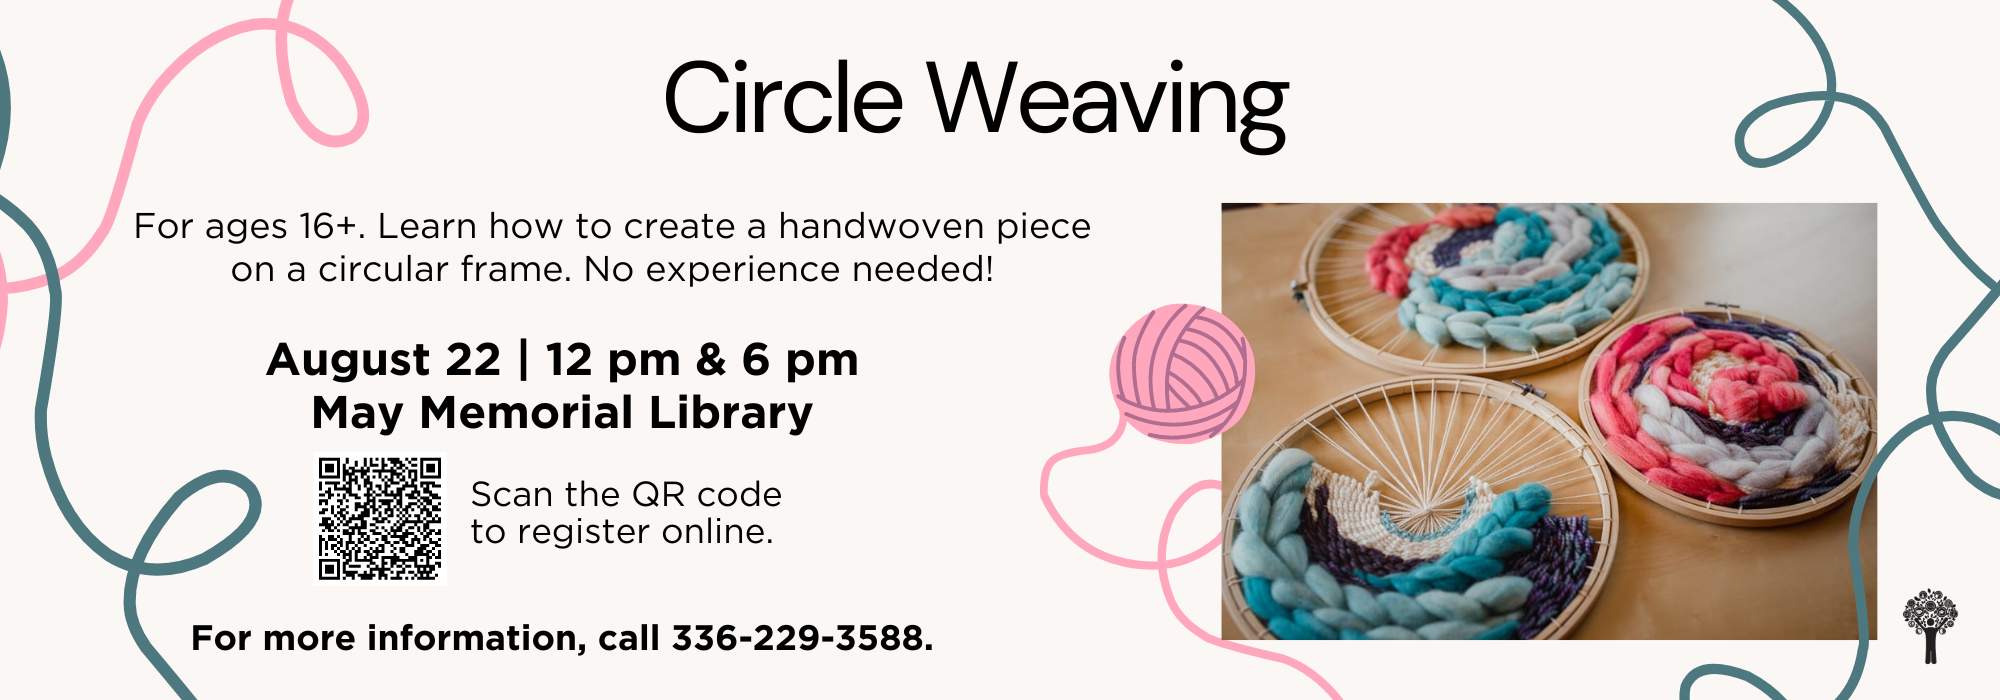 8.22 at 12 & 6 pm - Circle Weaving Class at May Memorial